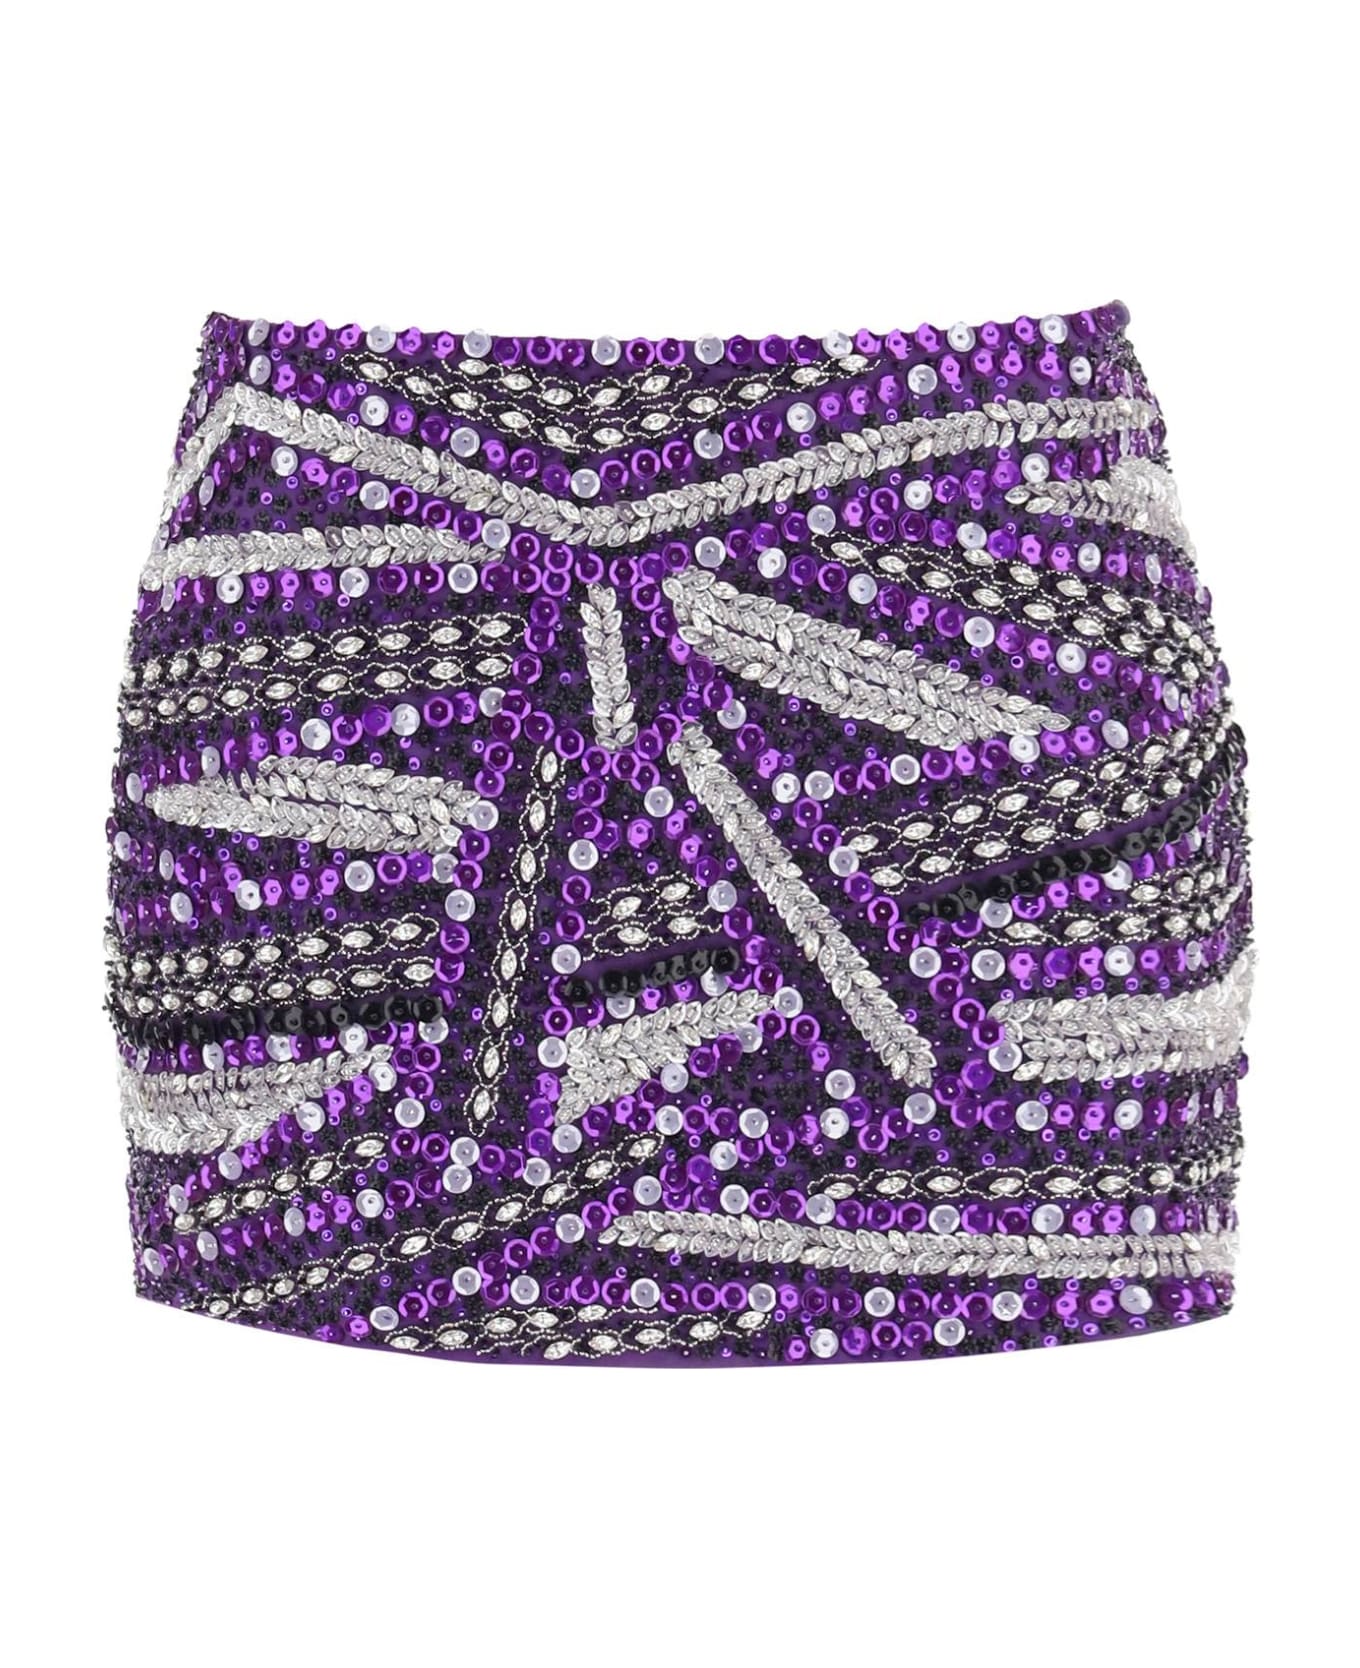 Des Phemmes Miniskirt With Appliques - VIOLET (Purple)